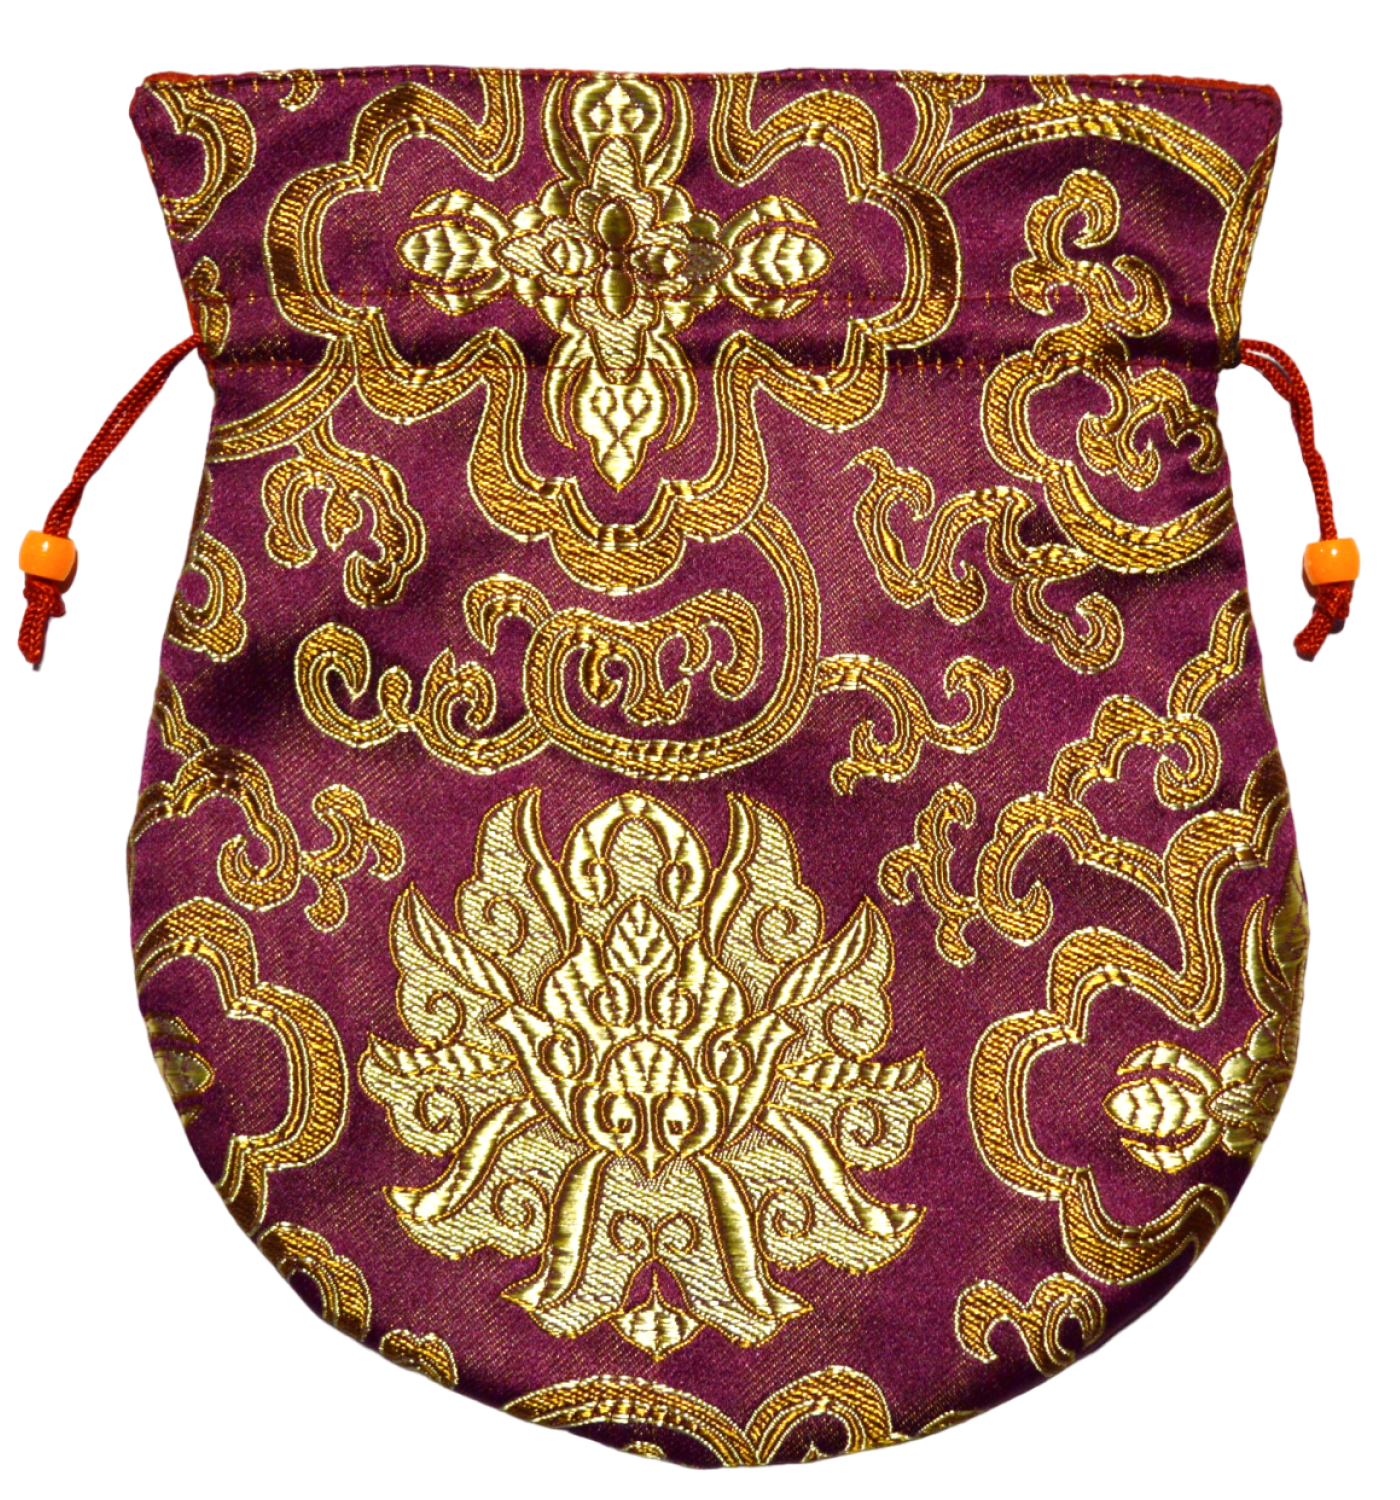 Мешочек для четок фиолетовый с орнаментом, 17 x 20 см. 